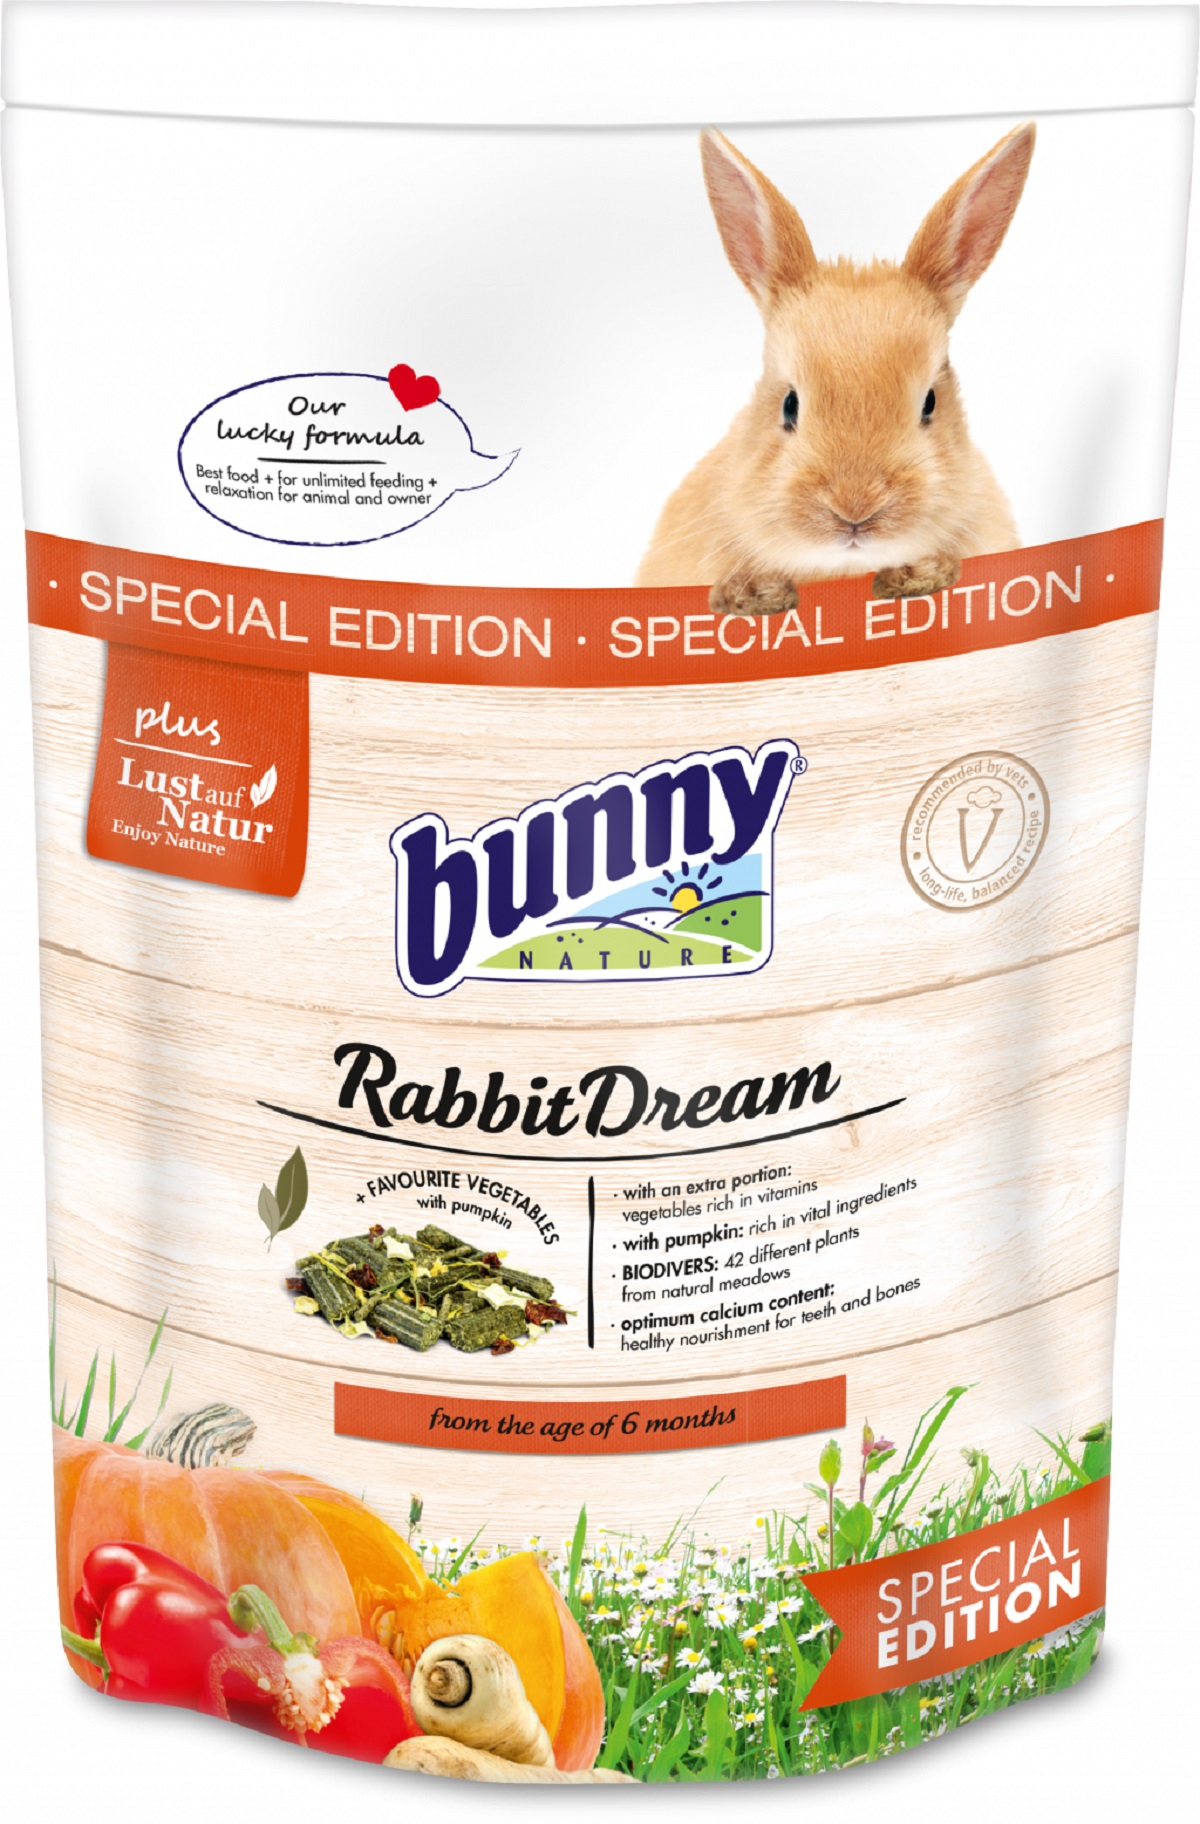 BUNNY RabbitDream Special Edition Alimento completo para conejos enanos